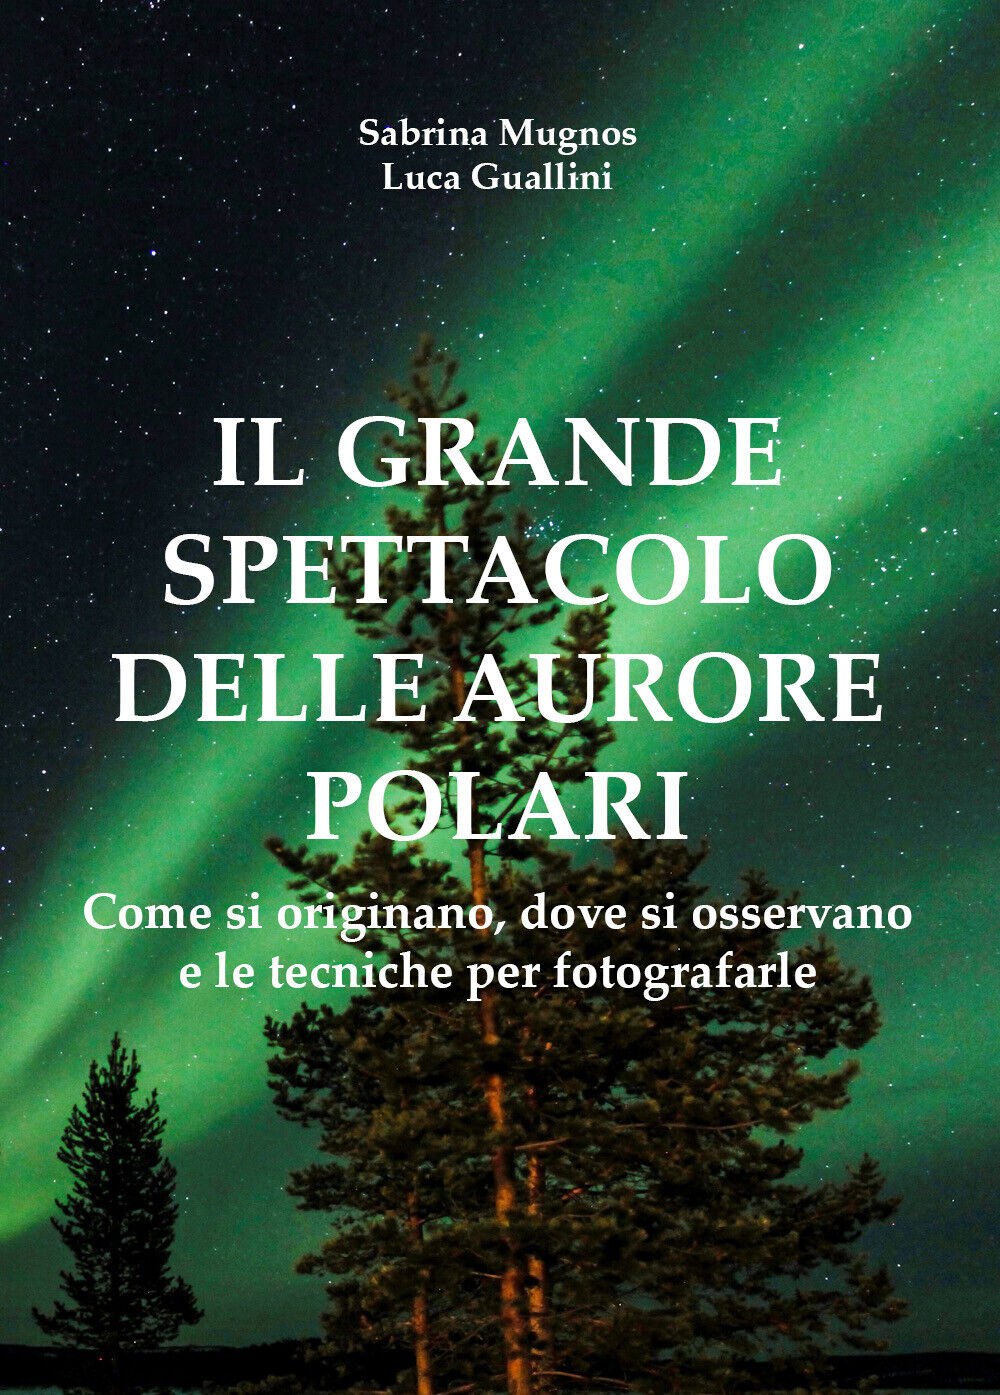 Il grande spettacolo delle aurore polari - Mugnos, Guallini,  2017,  Youcanprint